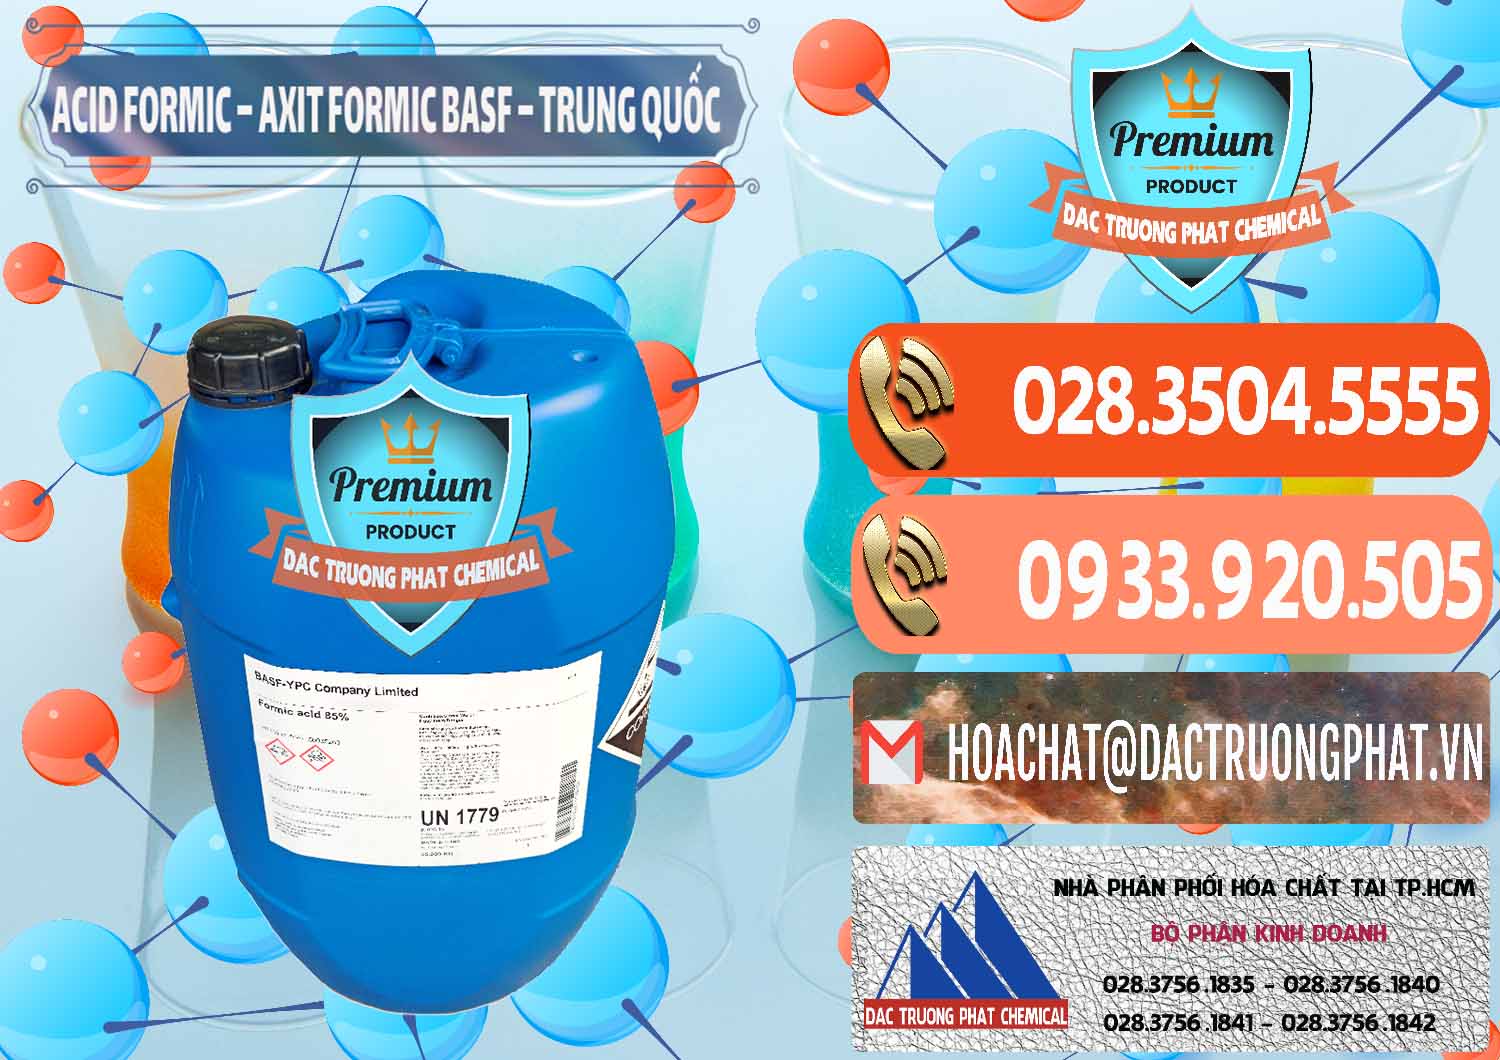 Nơi chuyên bán ( phân phối ) Acid Formic - Axit Formic BASF Trung Quốc China - 0025 - Cty bán và phân phối hóa chất tại TP.HCM - hoachatmientay.com